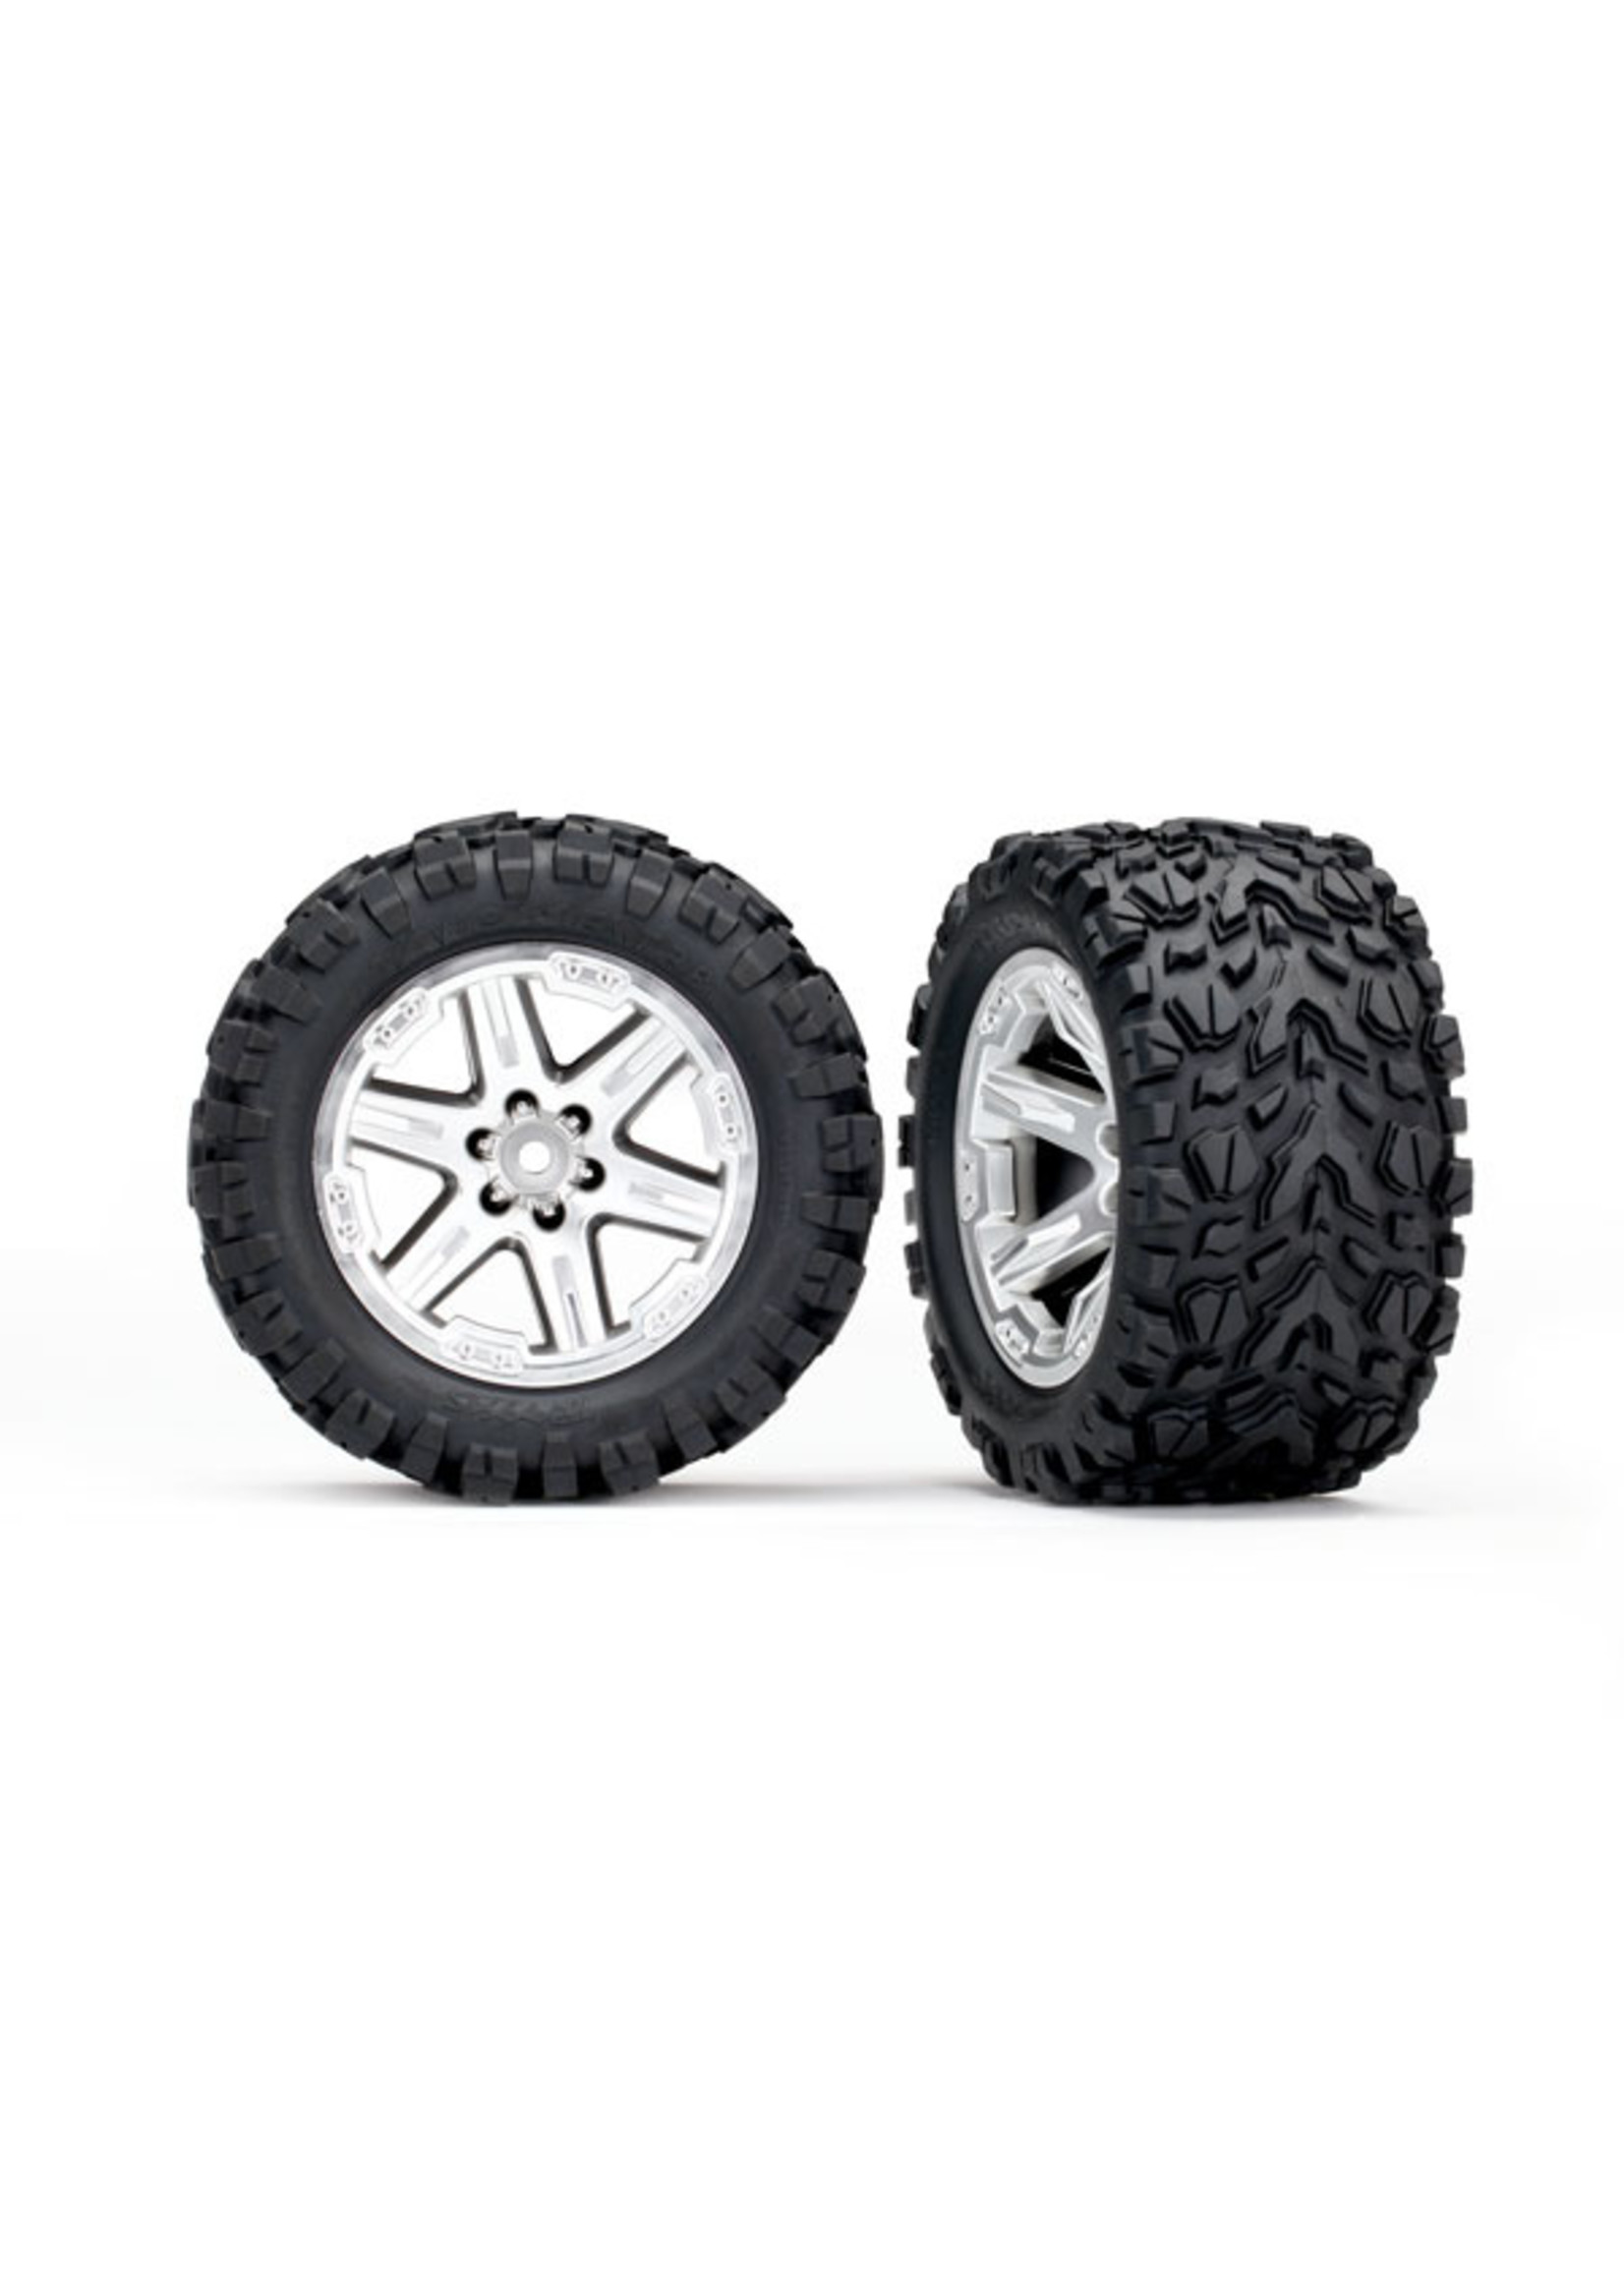 Traxxas 6774R - RXT Satin Chrome Wheels / Talon Extreme Tires